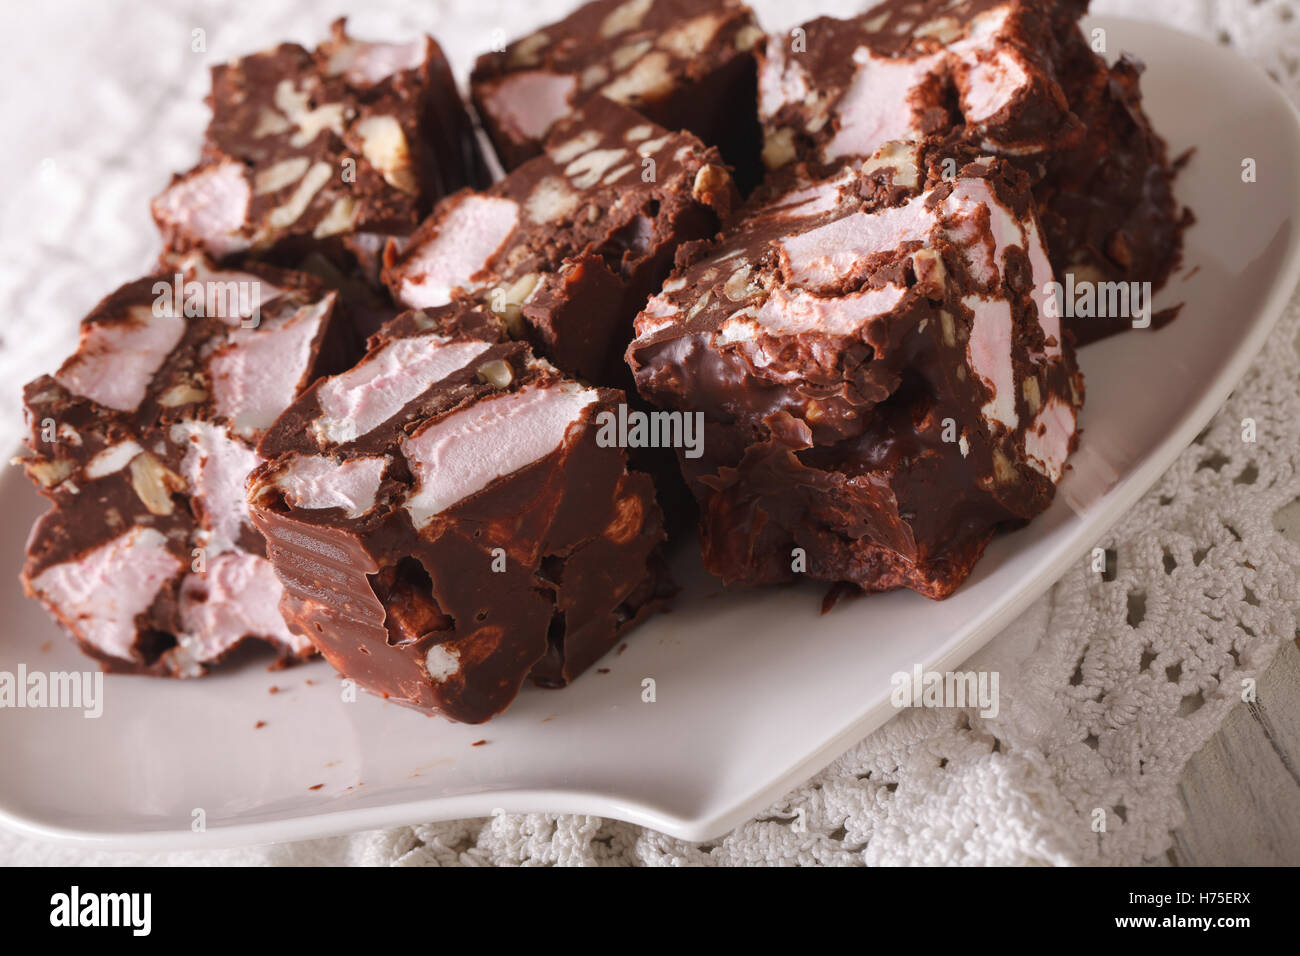 Schokoladendessert steiniger Weg mit Marshmallow und Muttern Nahaufnahme auf einem Teller auf den Tisch. Horizontale Stockfoto